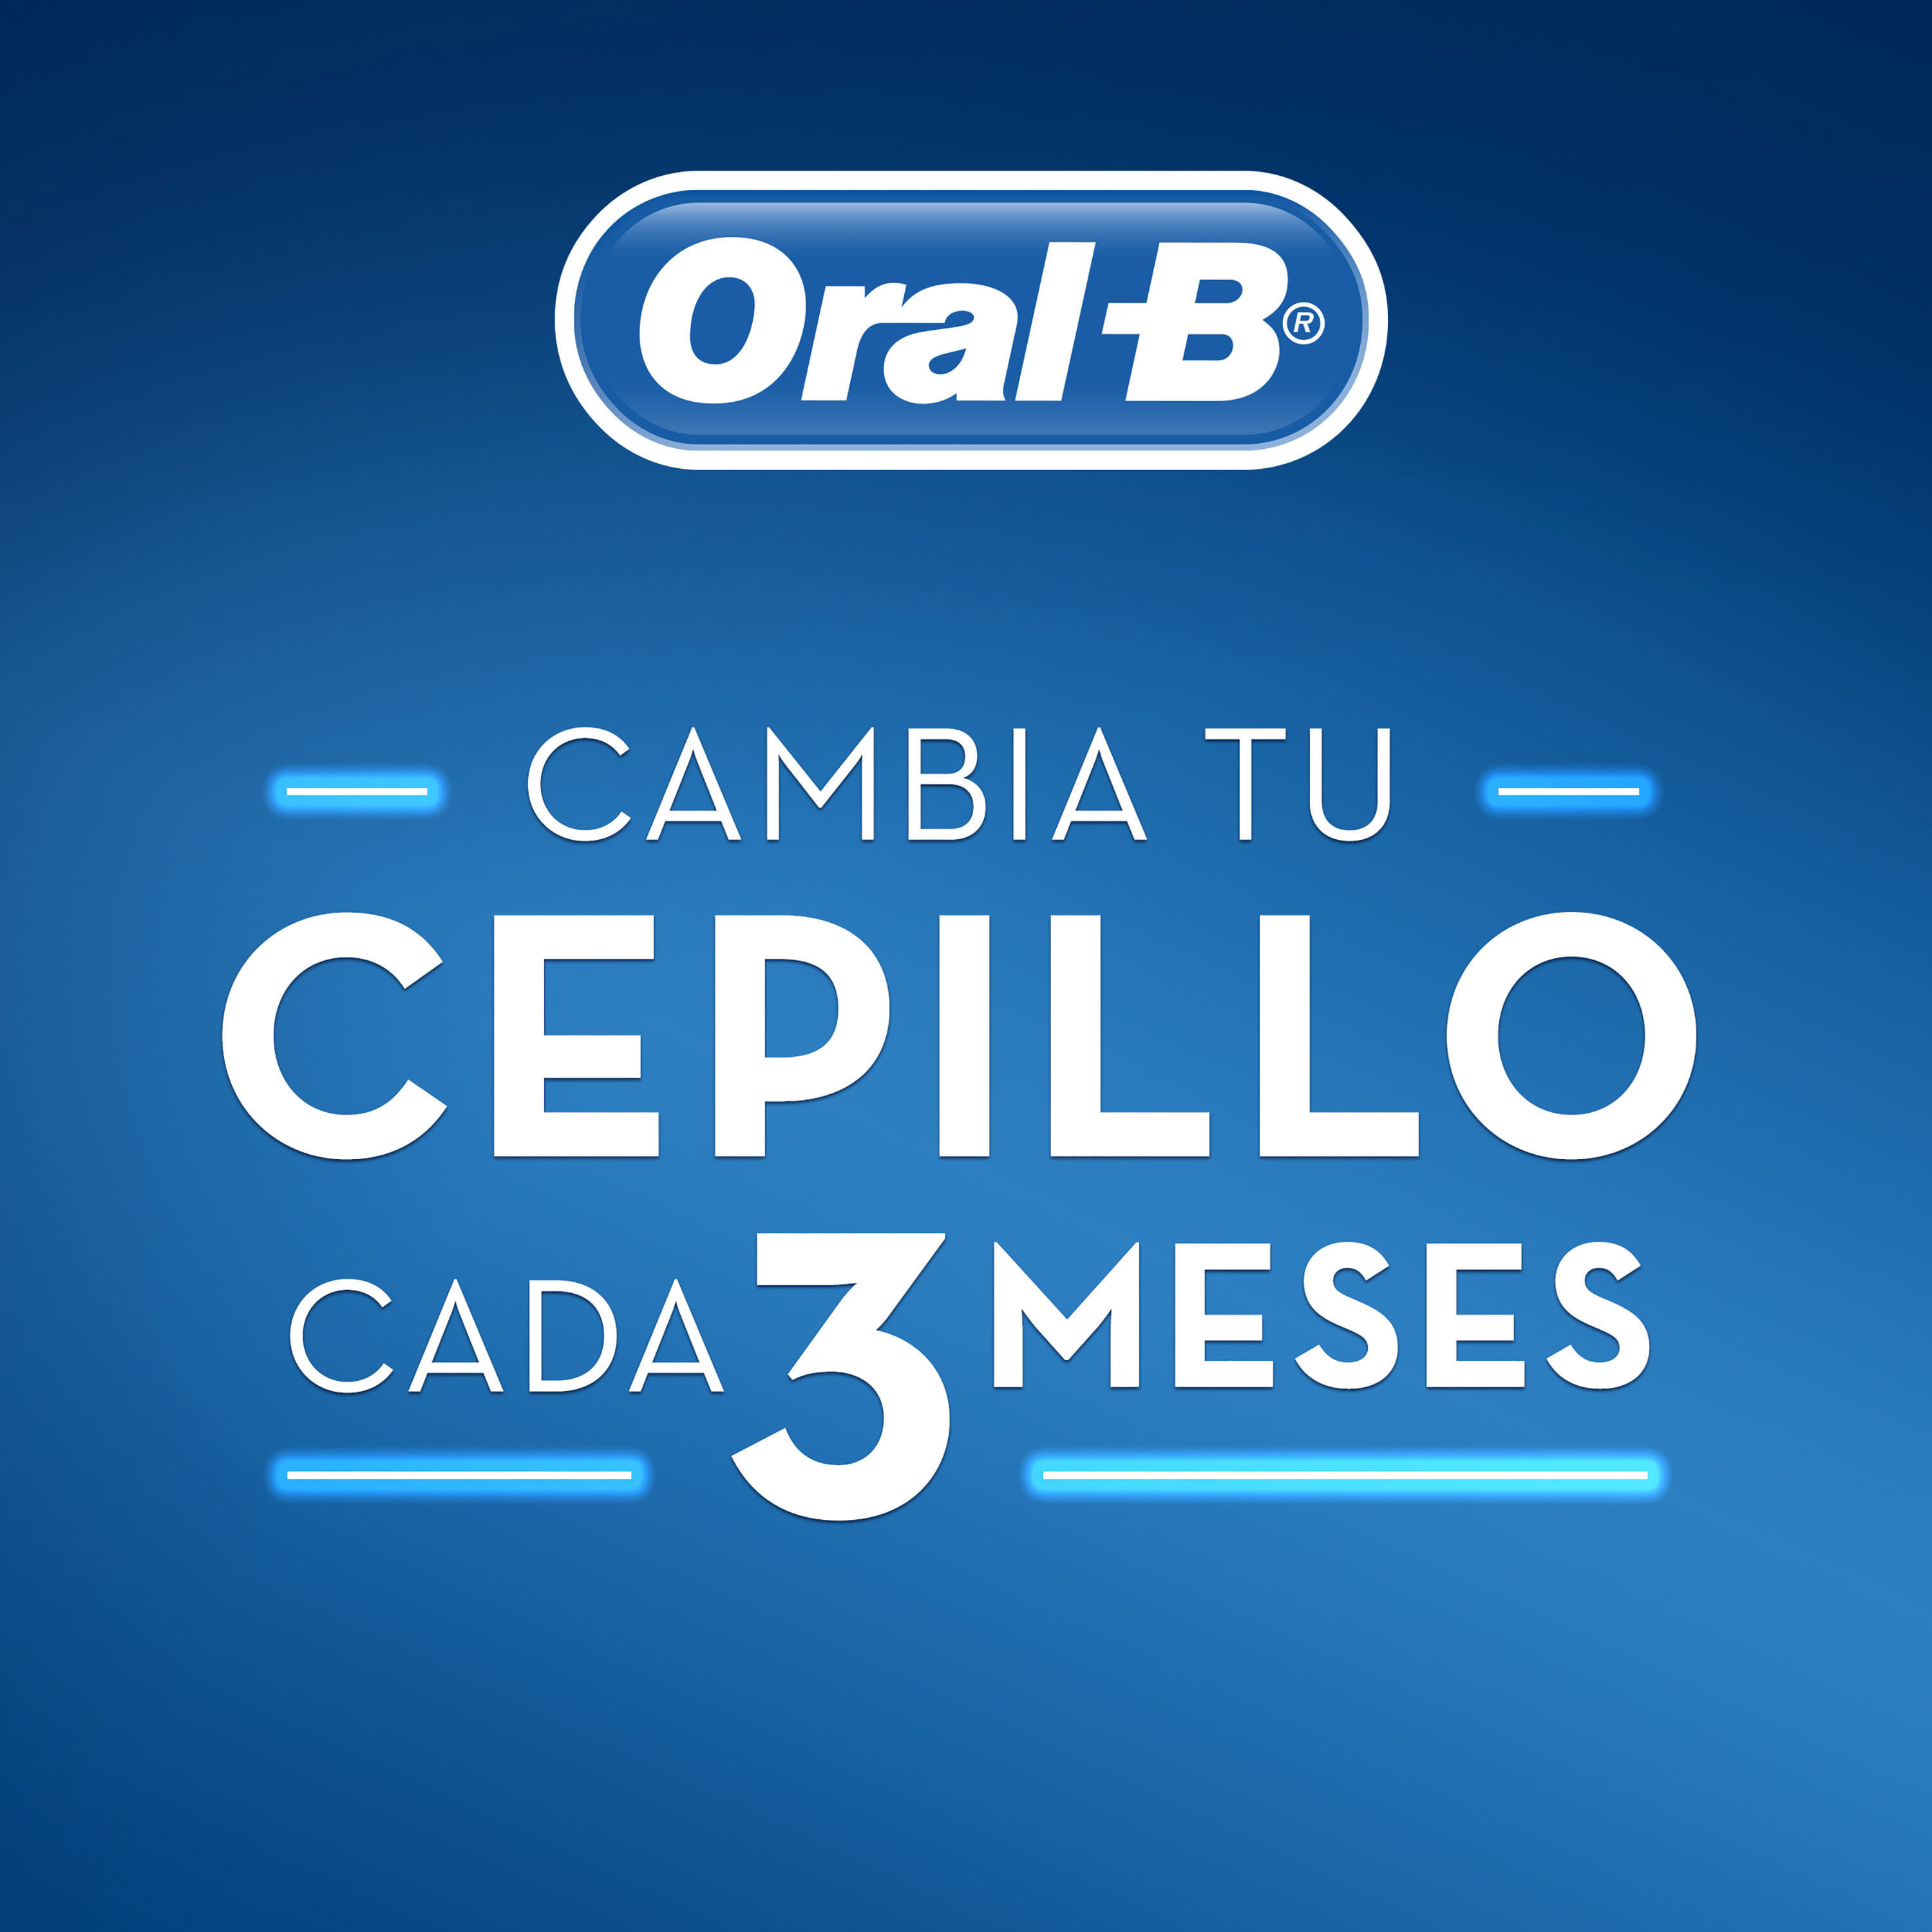 Oral B Encías Detox Extra Suave Cepillos Dentales 2 Unidades En FarmaPlus -  FarmaPlus